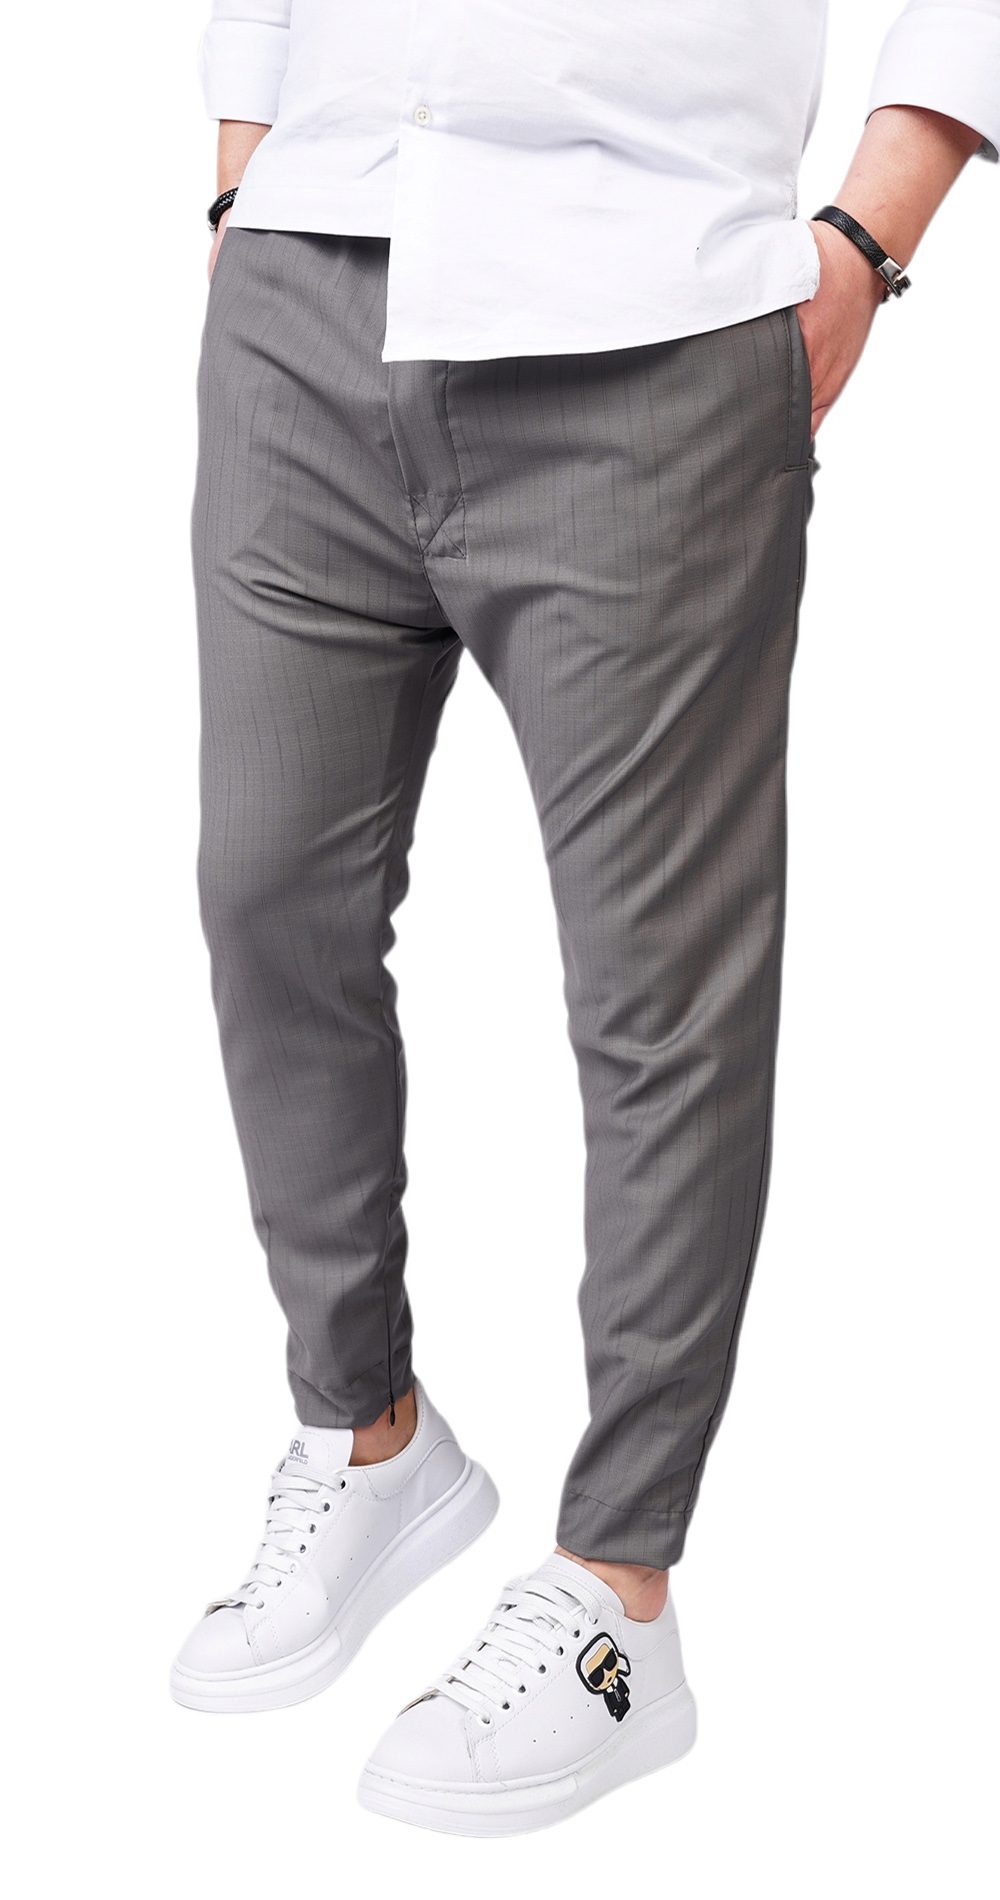 Pantaloni din stofa gri, premium MPL6109